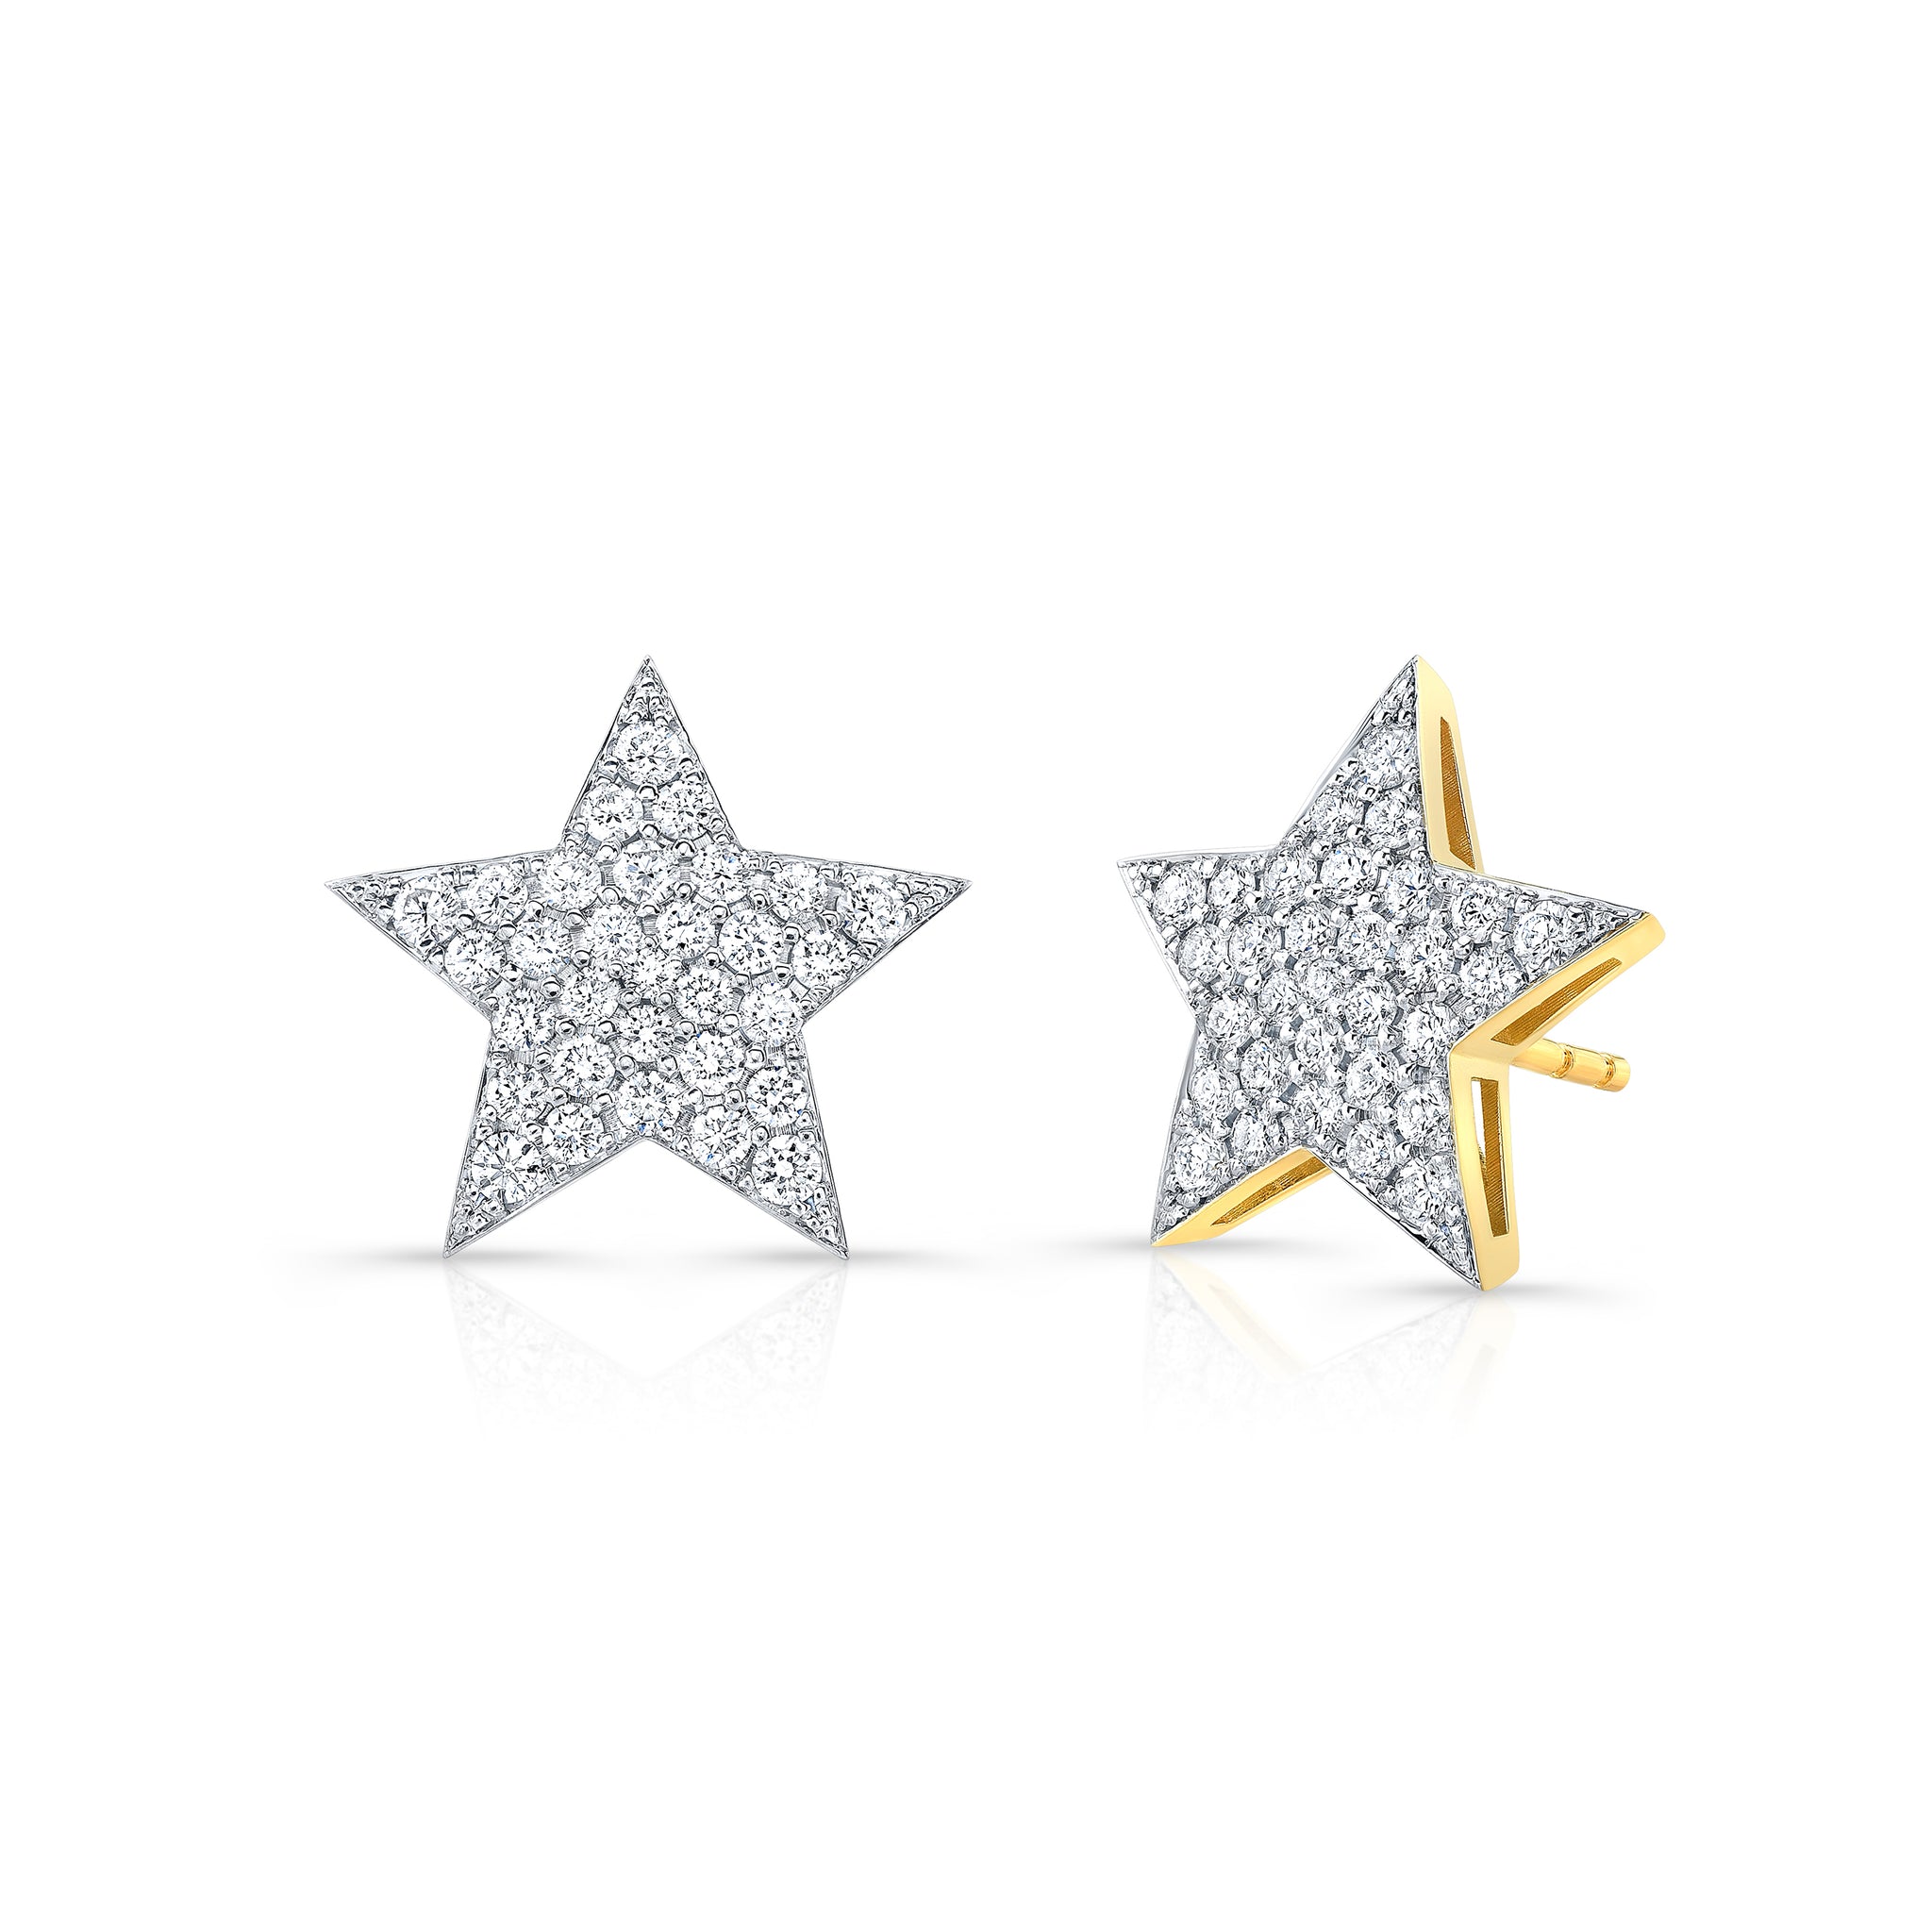 Extra Large Diamond Star Earrings | bespoke fine jewelry